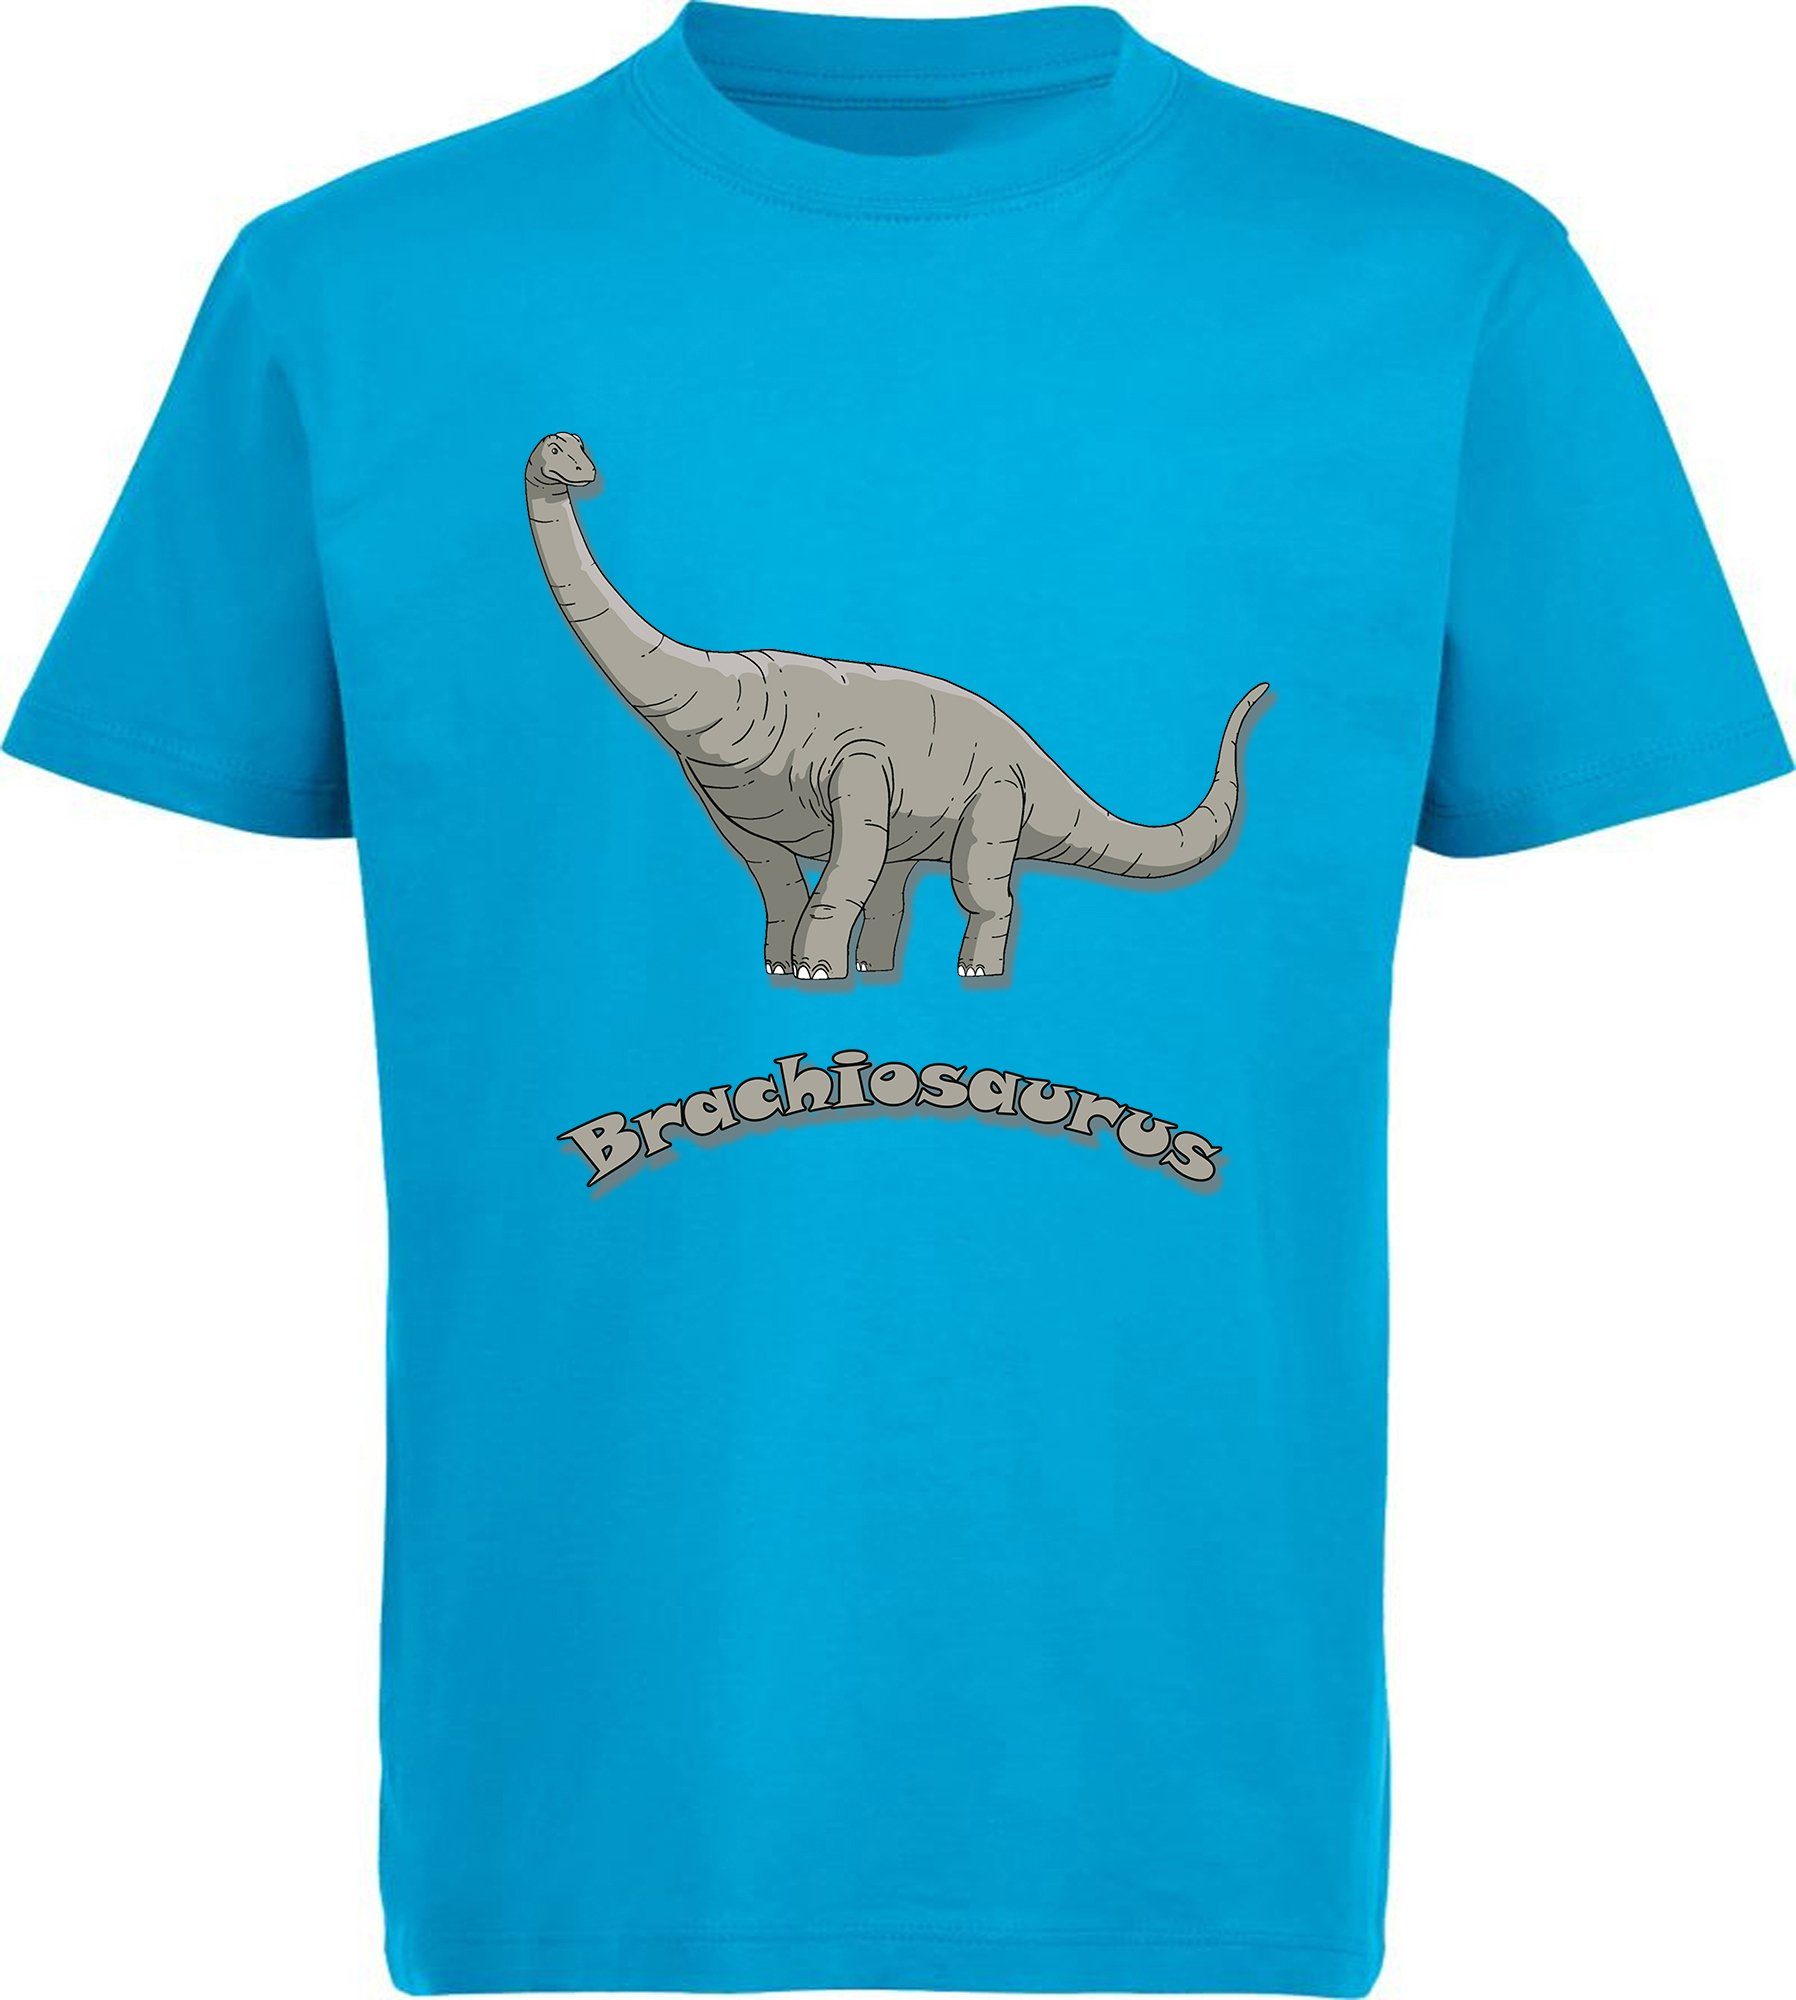 MyDesign24 Print-Shirt bedrucktes Kinder T-Shirt mit aqua Baumwollshirt weiß, Dino, blau, i66 blau schwarz, Brachiosaurus rot, mit